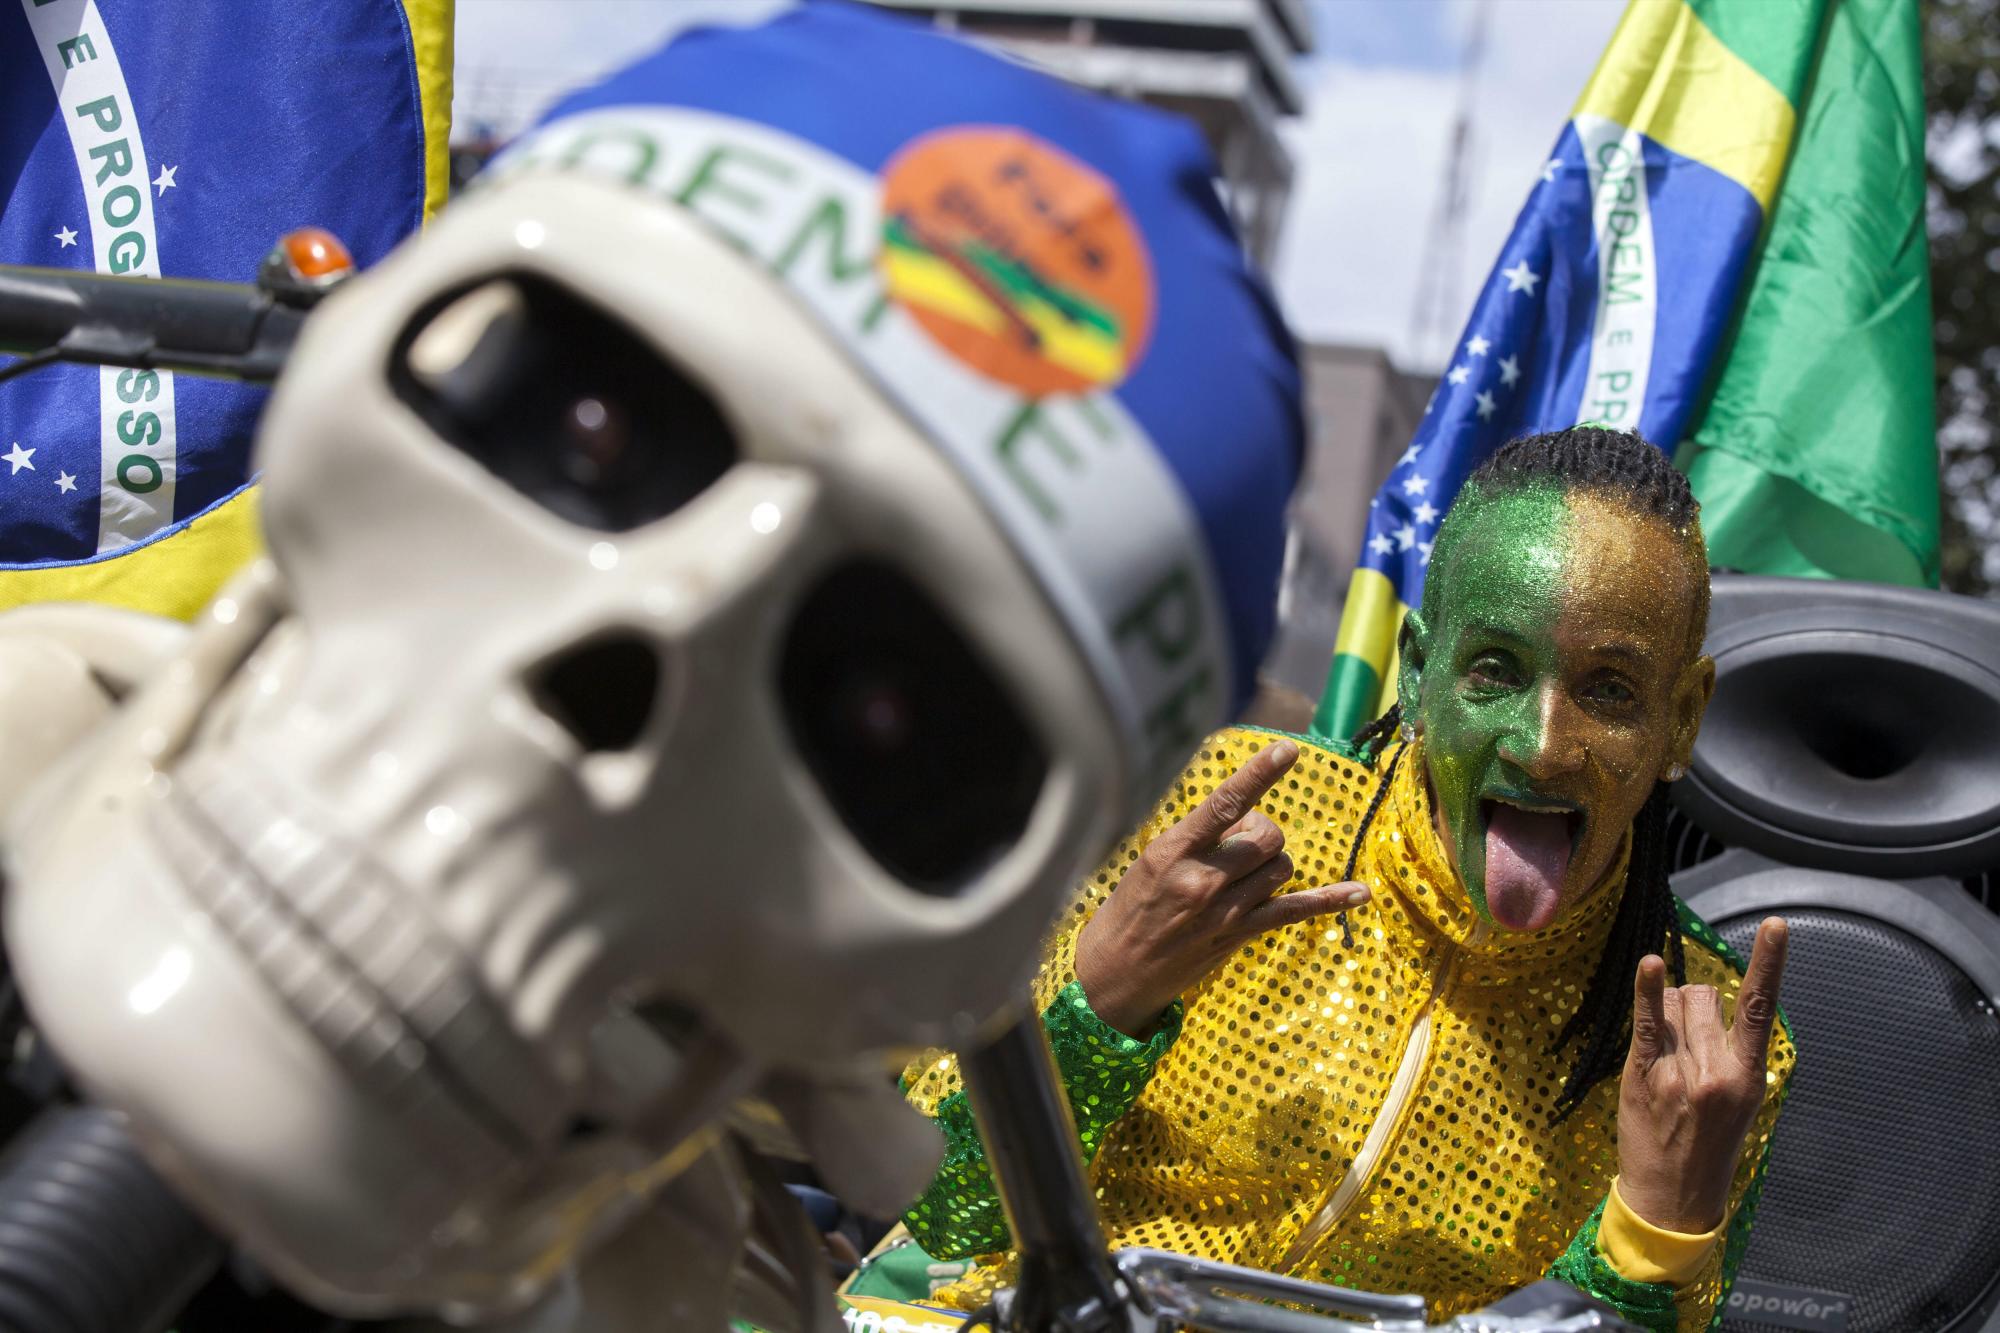 Un manifestante participa en una protesta contra el Gobierno de Dilma Rousseff hoy, domingo 16 de agosto de 2015, en la ciudad de Sao Paulo (Brasil). Miles de personas se concentraron en decenas de ciudades de Brasil para manifestaciones convocadas por la oposición, que pretende dar una prueba de fuerza y protestar por la corrupción y la gestión económica del Gobierno de Dilma Rousseff. 